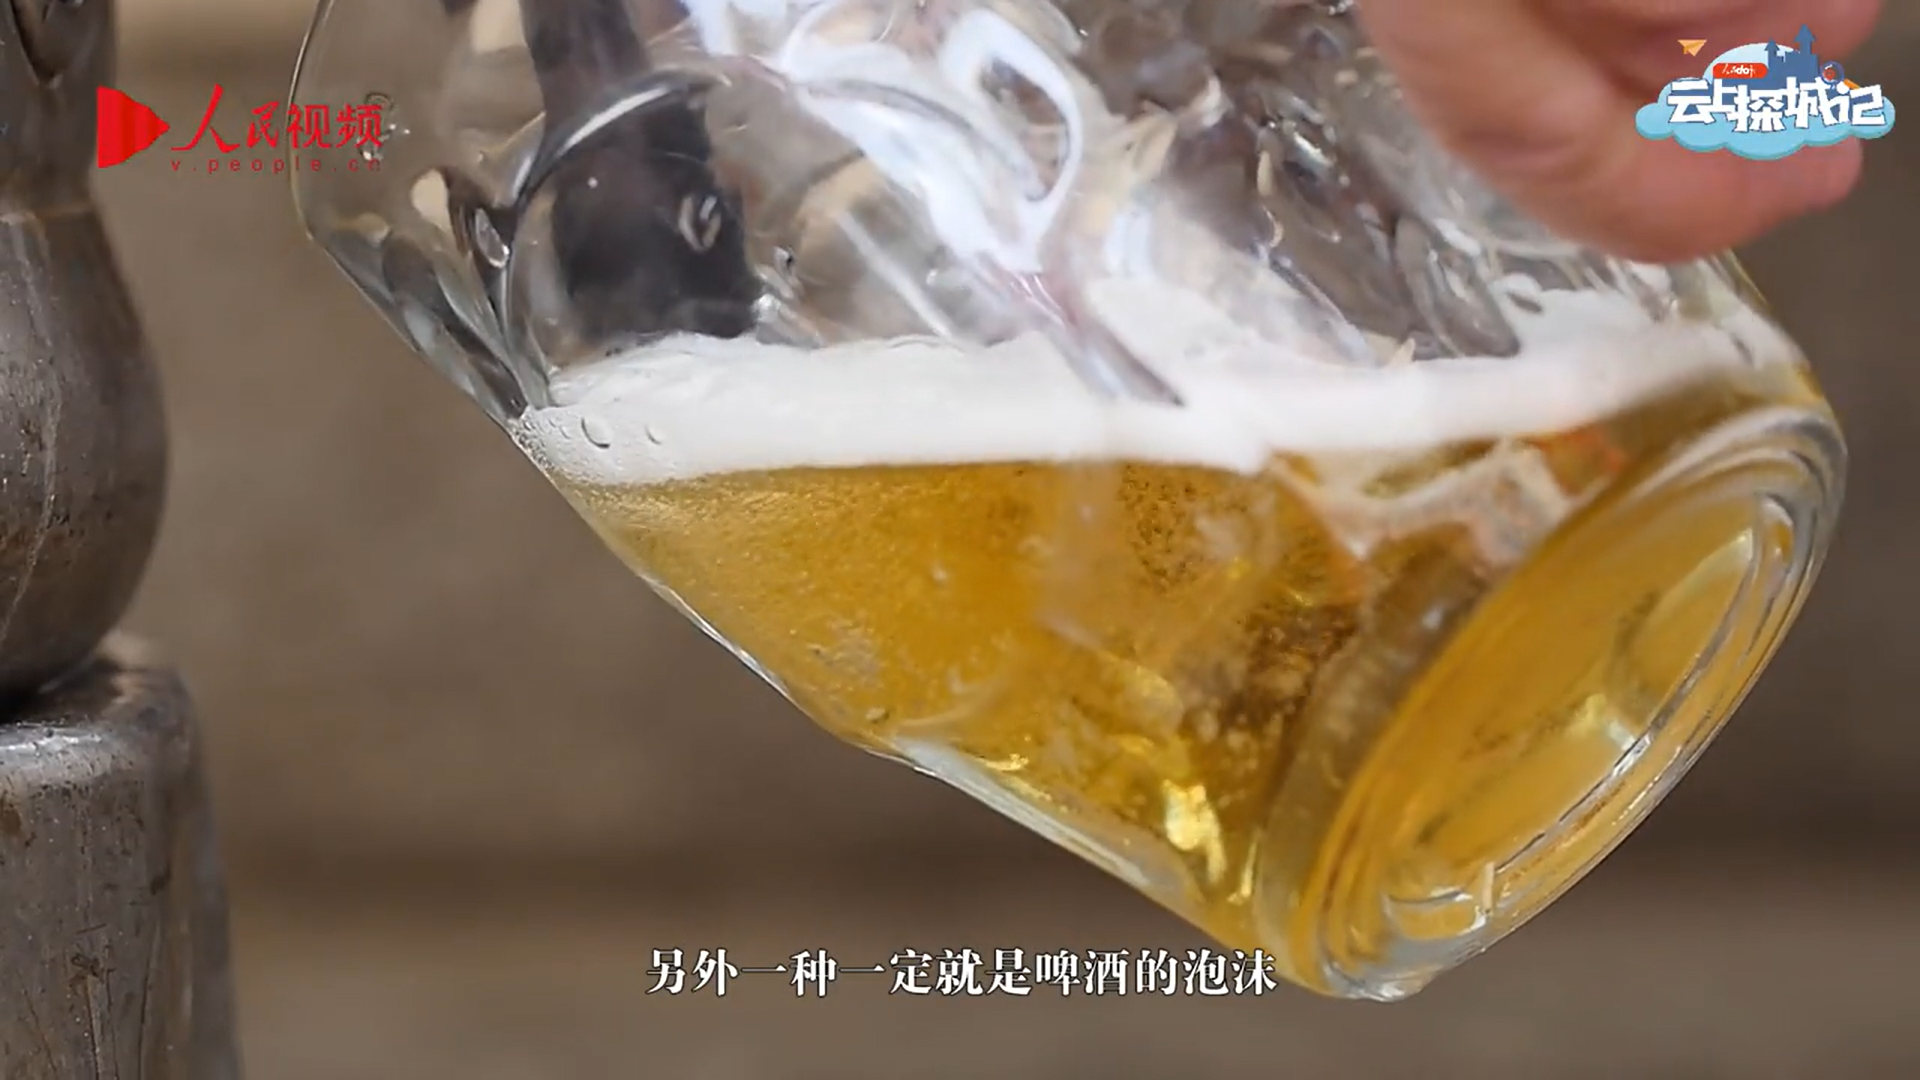 云上探城记·青岛|“塑料袋打青啤”--解密啤酒文化的前世今生